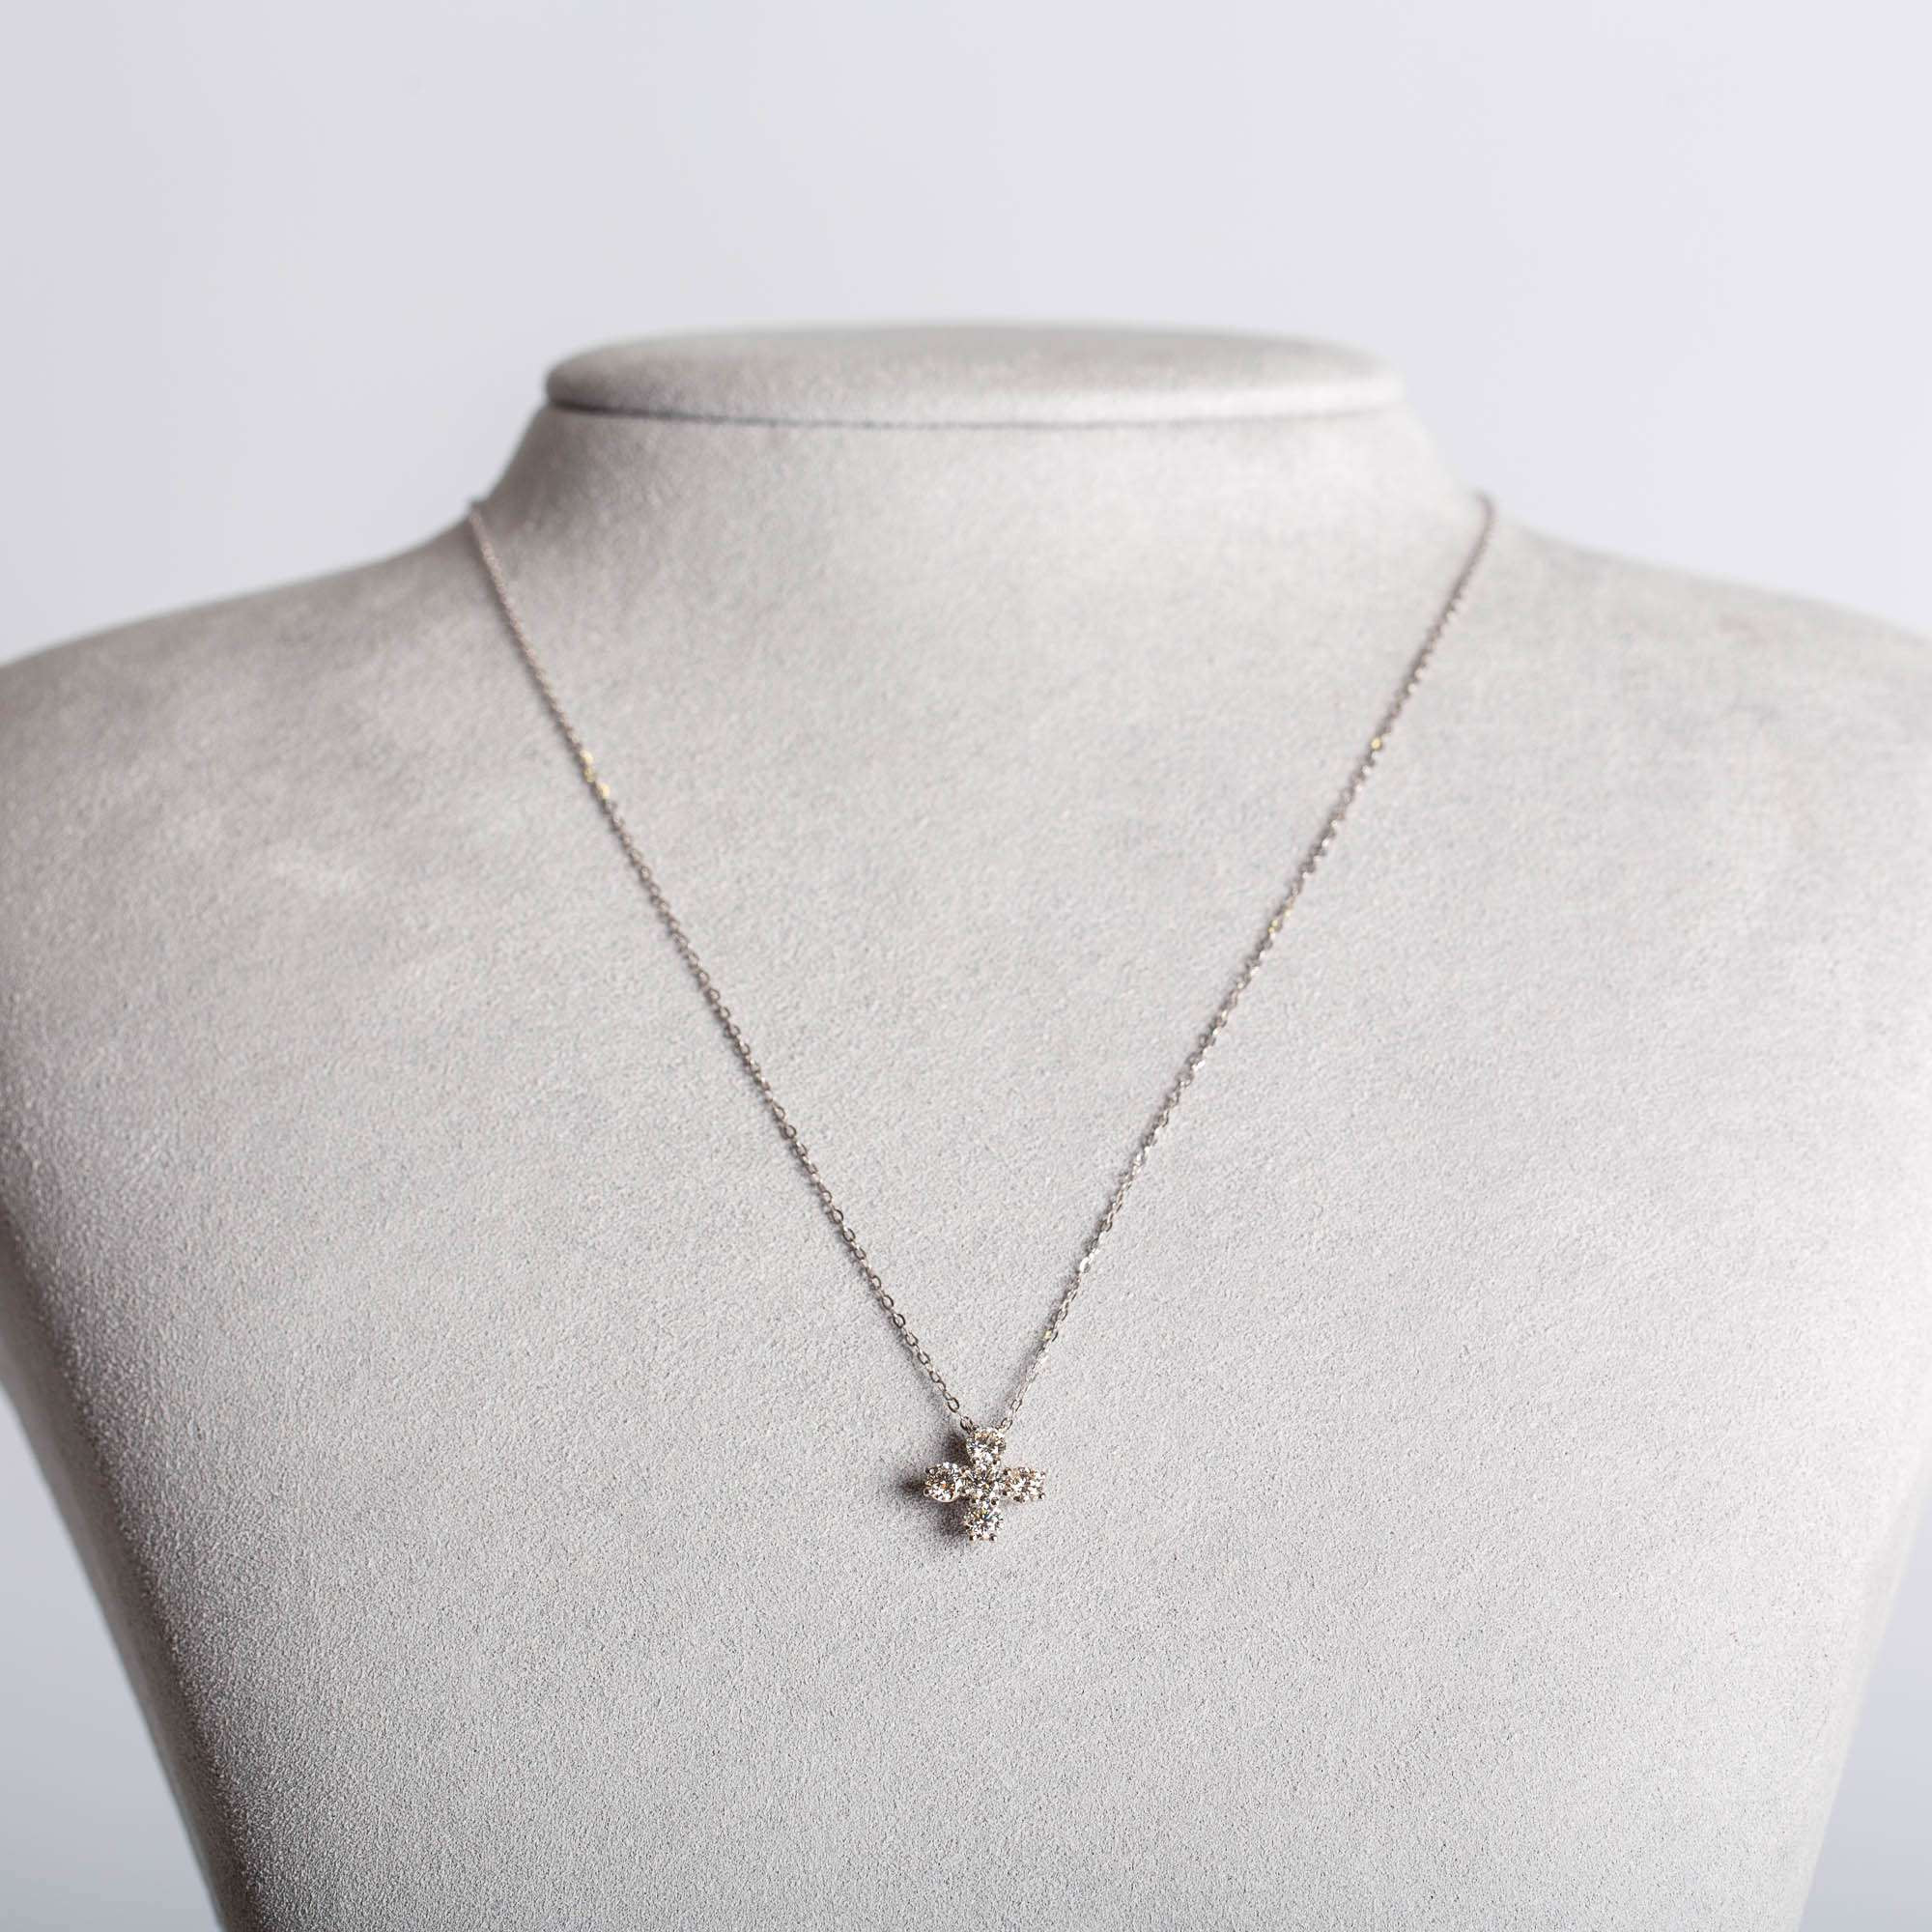 Diamantene vierblättrige Kleeblatt Halskette | 18K Weissgold 1